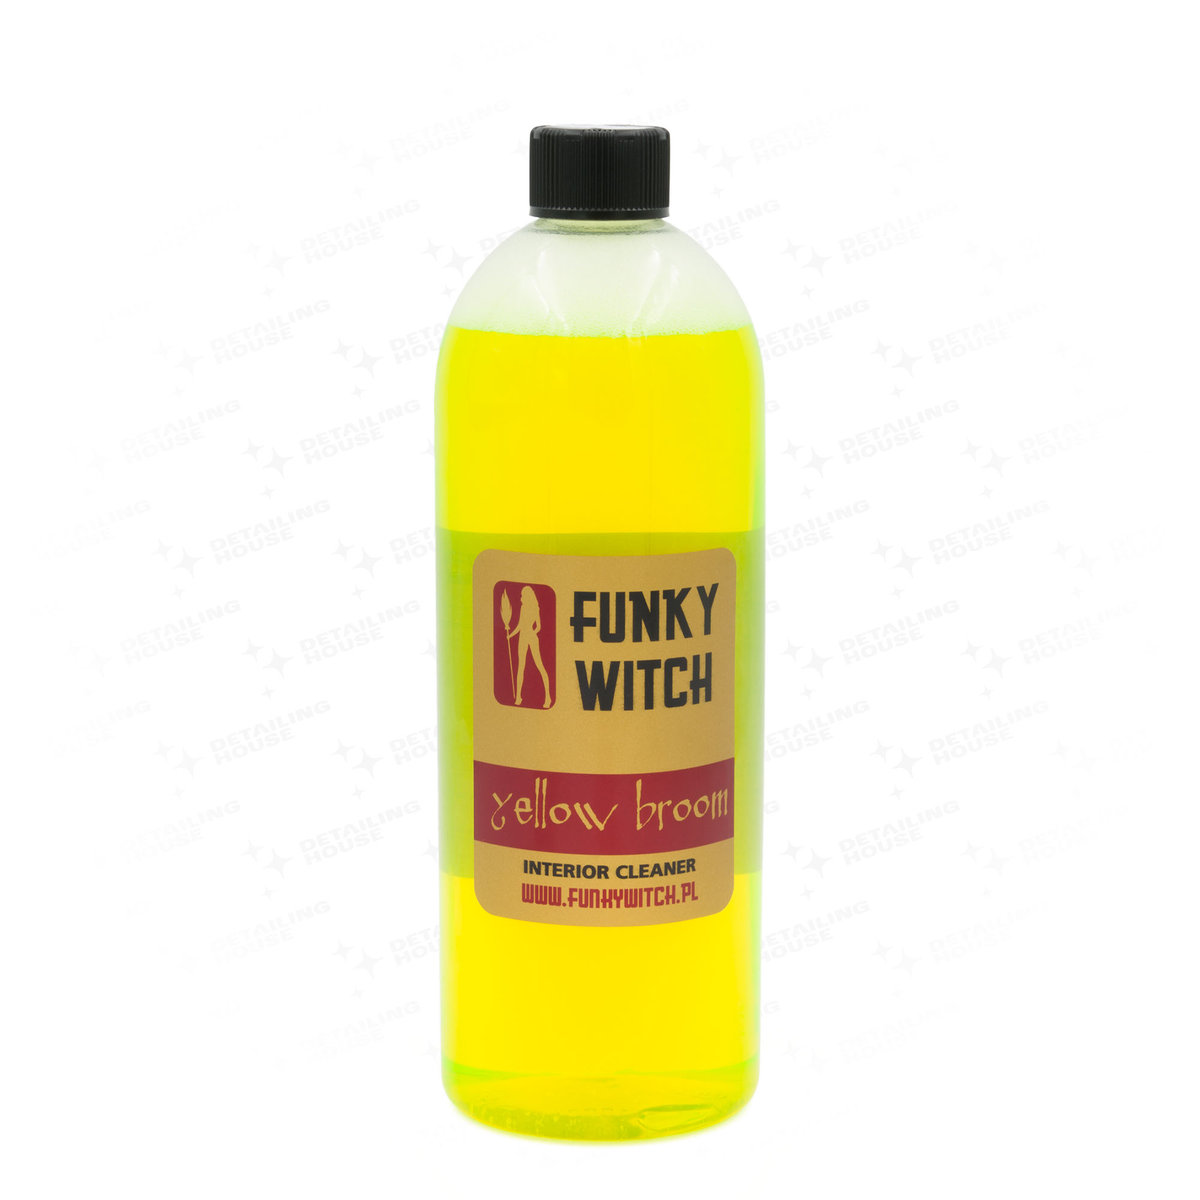 Funky Witch Yellow Broom Interior Cleaner 1L - Preparat Do Czyszczenia Wnętrza Samochodu